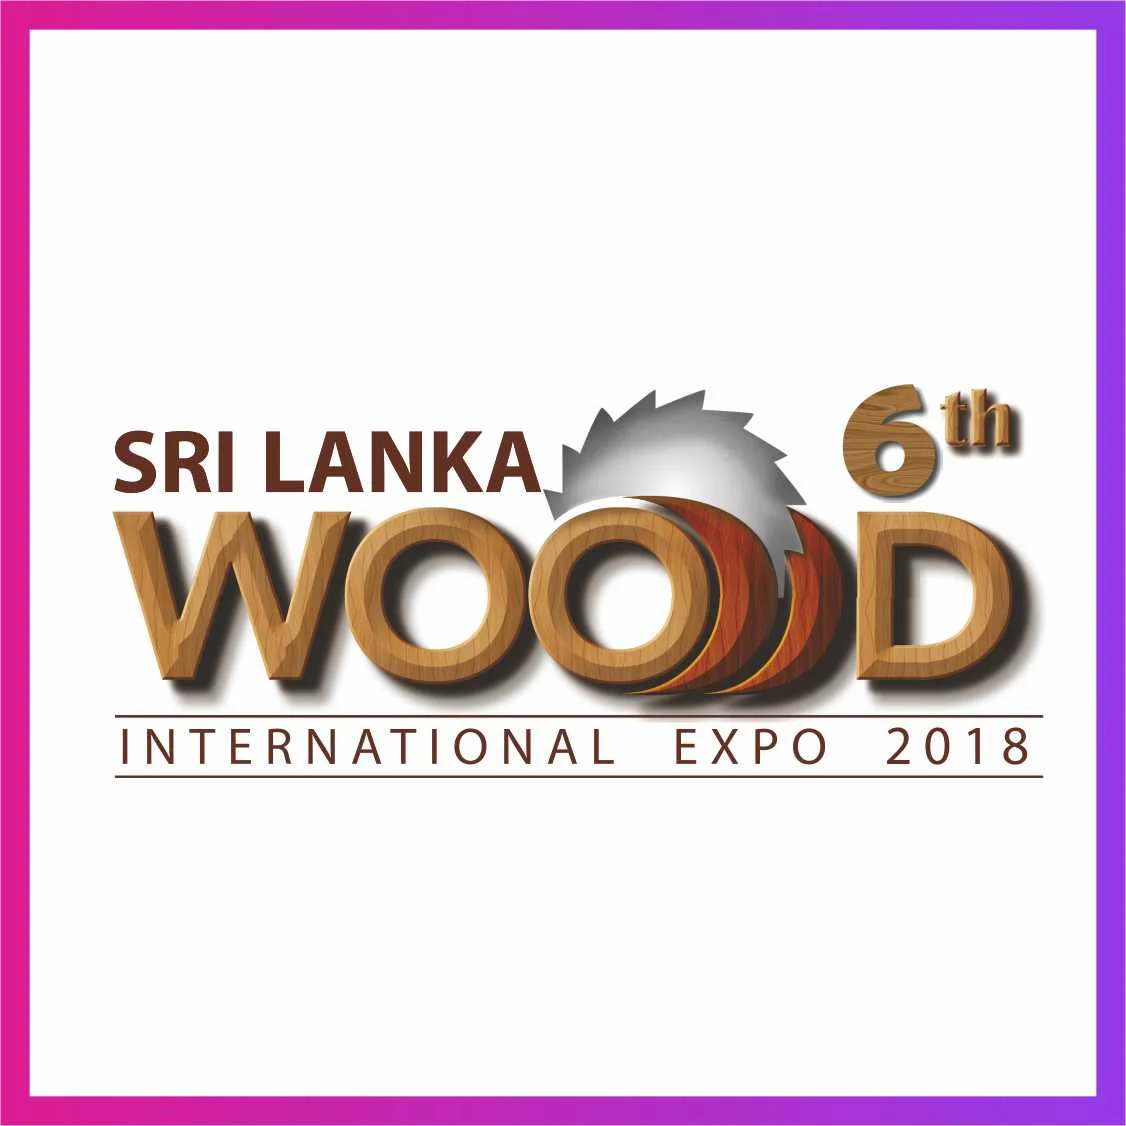 Sri Lanka Wood International Expo 2018